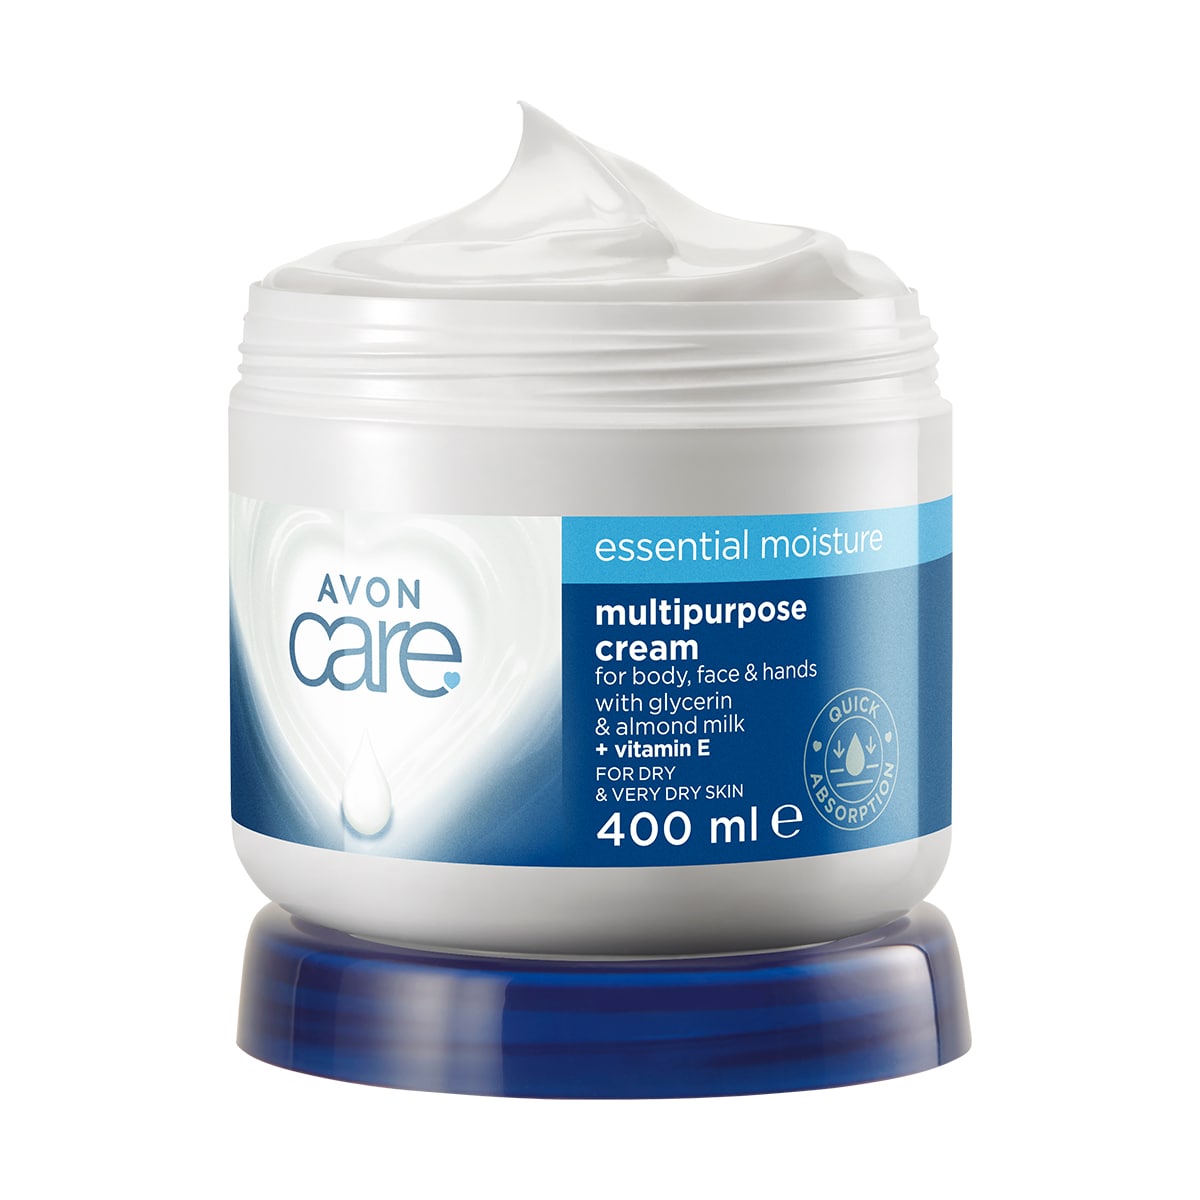 Avon Care Essential Moisture Multipurpose Cream 400ml